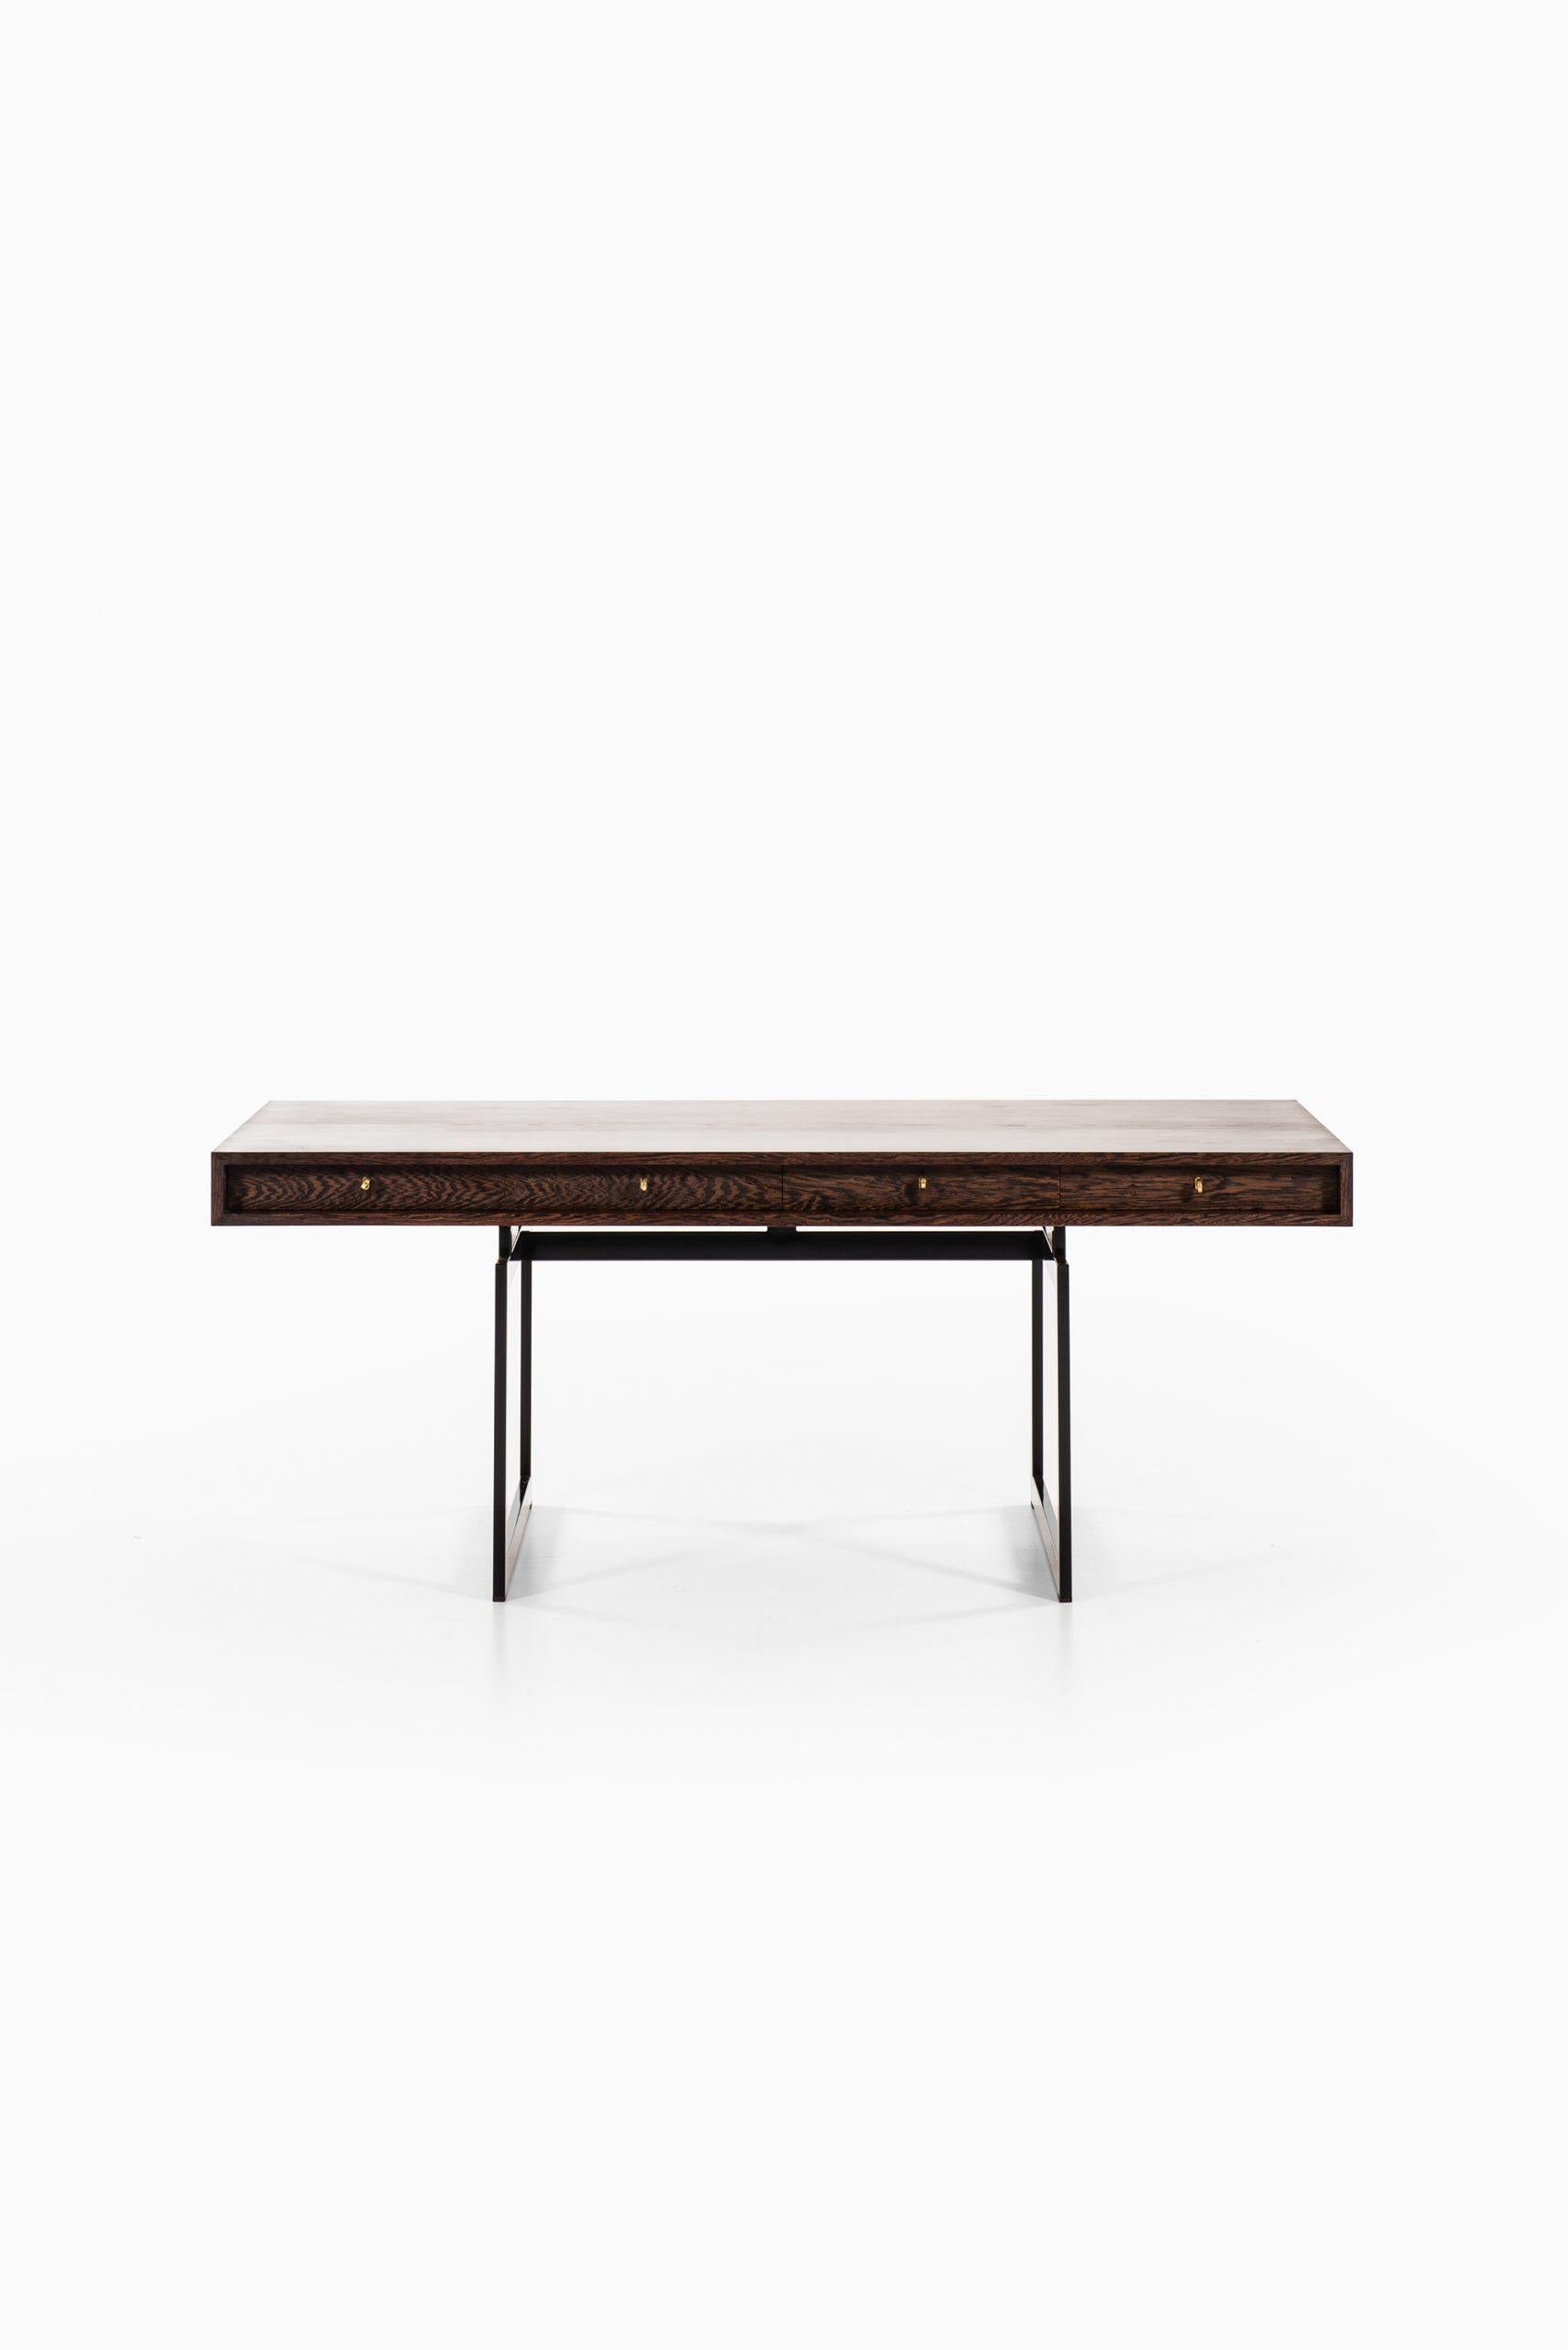 Very rare freestanding desk model 901 designed by Bodil Kjær. Produced by E. Pedersen & Søn in Denmark.